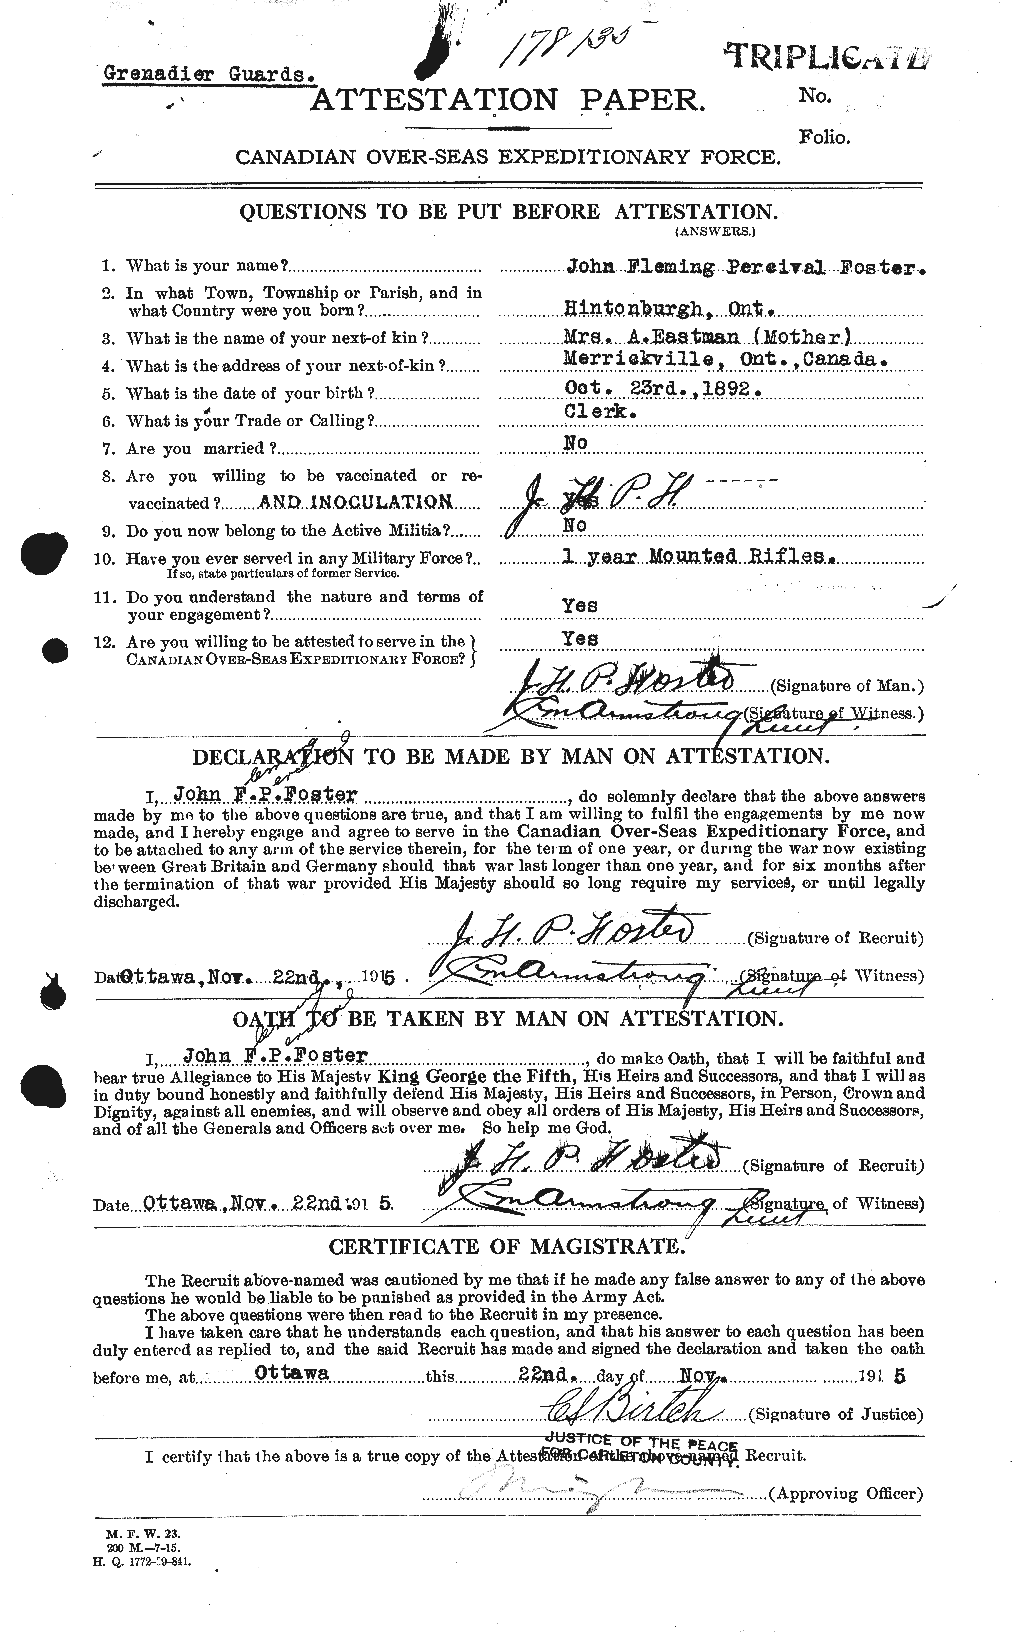 Dossiers du Personnel de la Première Guerre mondiale - CEC 333358a